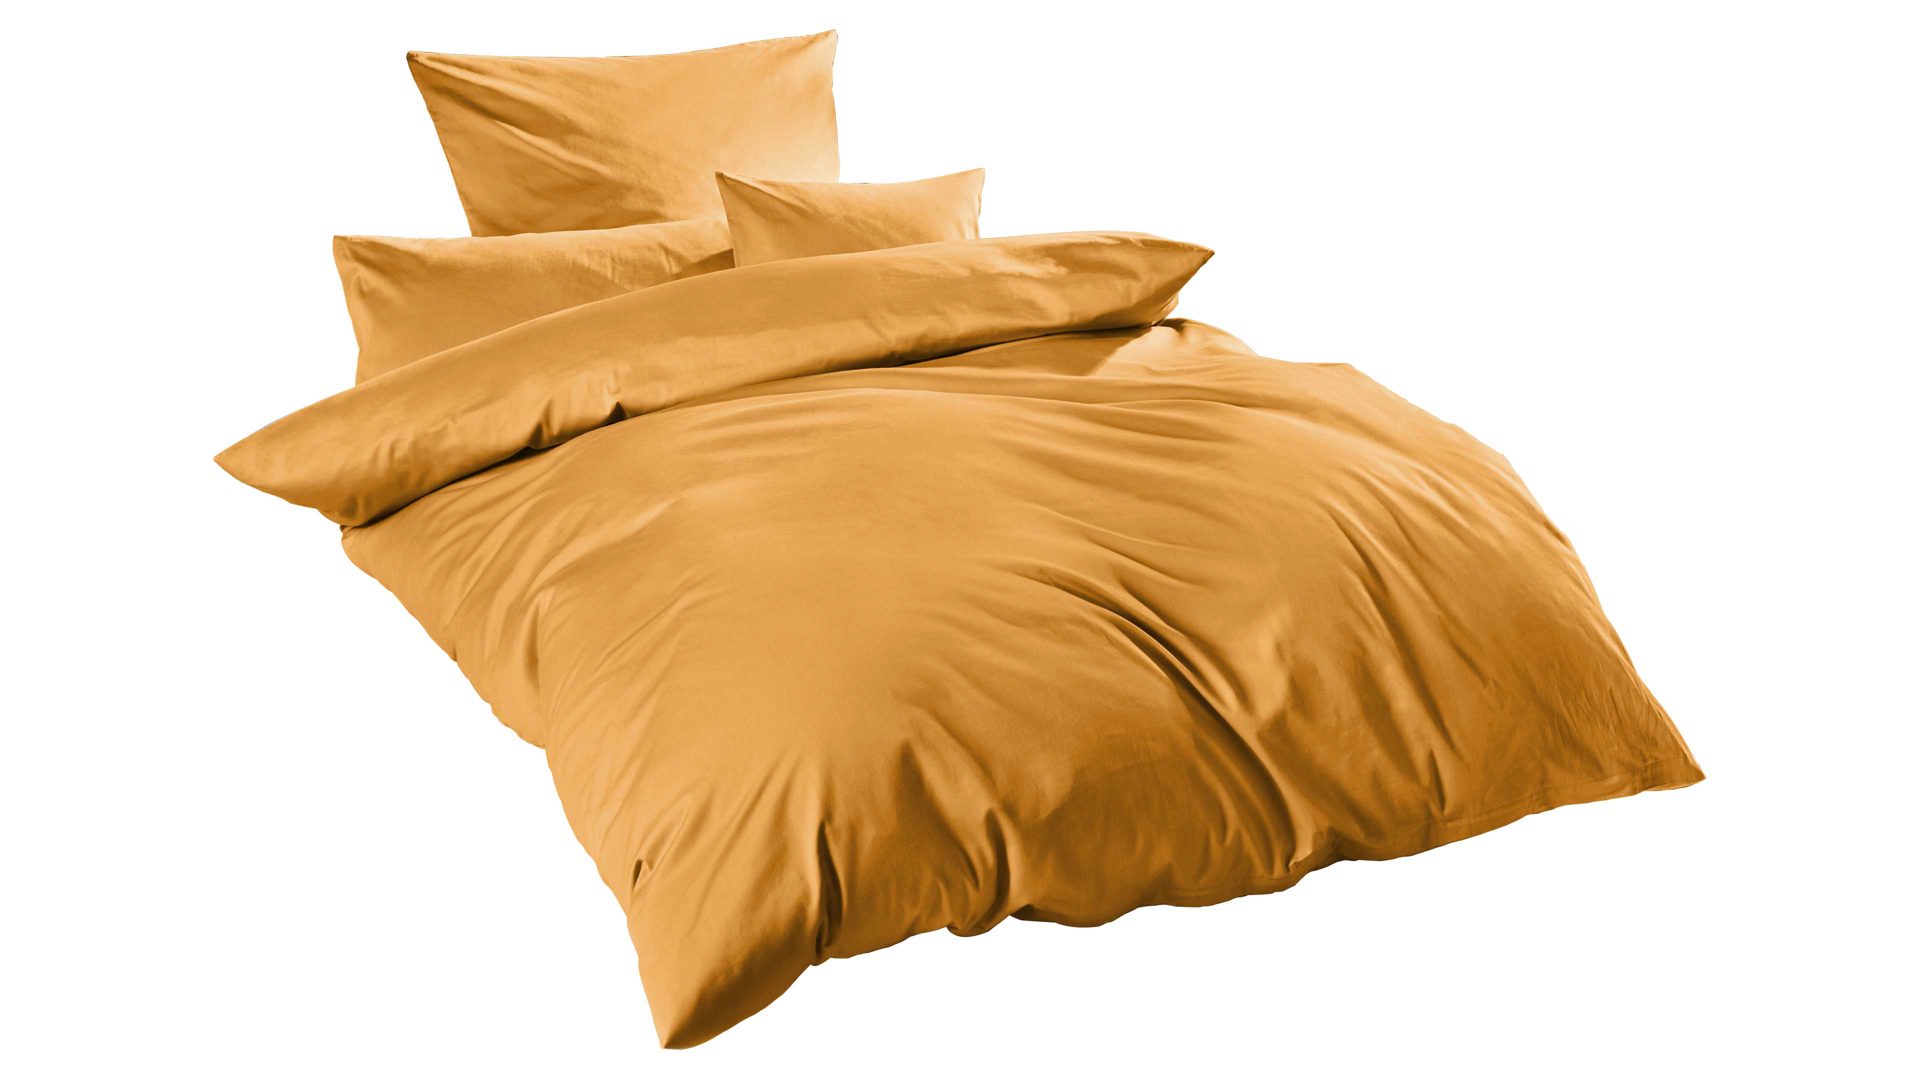 Bettwäsche-Set H.g. hahn haustextilien aus Stoff in Gelb HAHN Luxus-Satin-Bettwäsche Sempre senffarbener Baumwollsatin – zweiteilig, ca. 155 x 200 cm